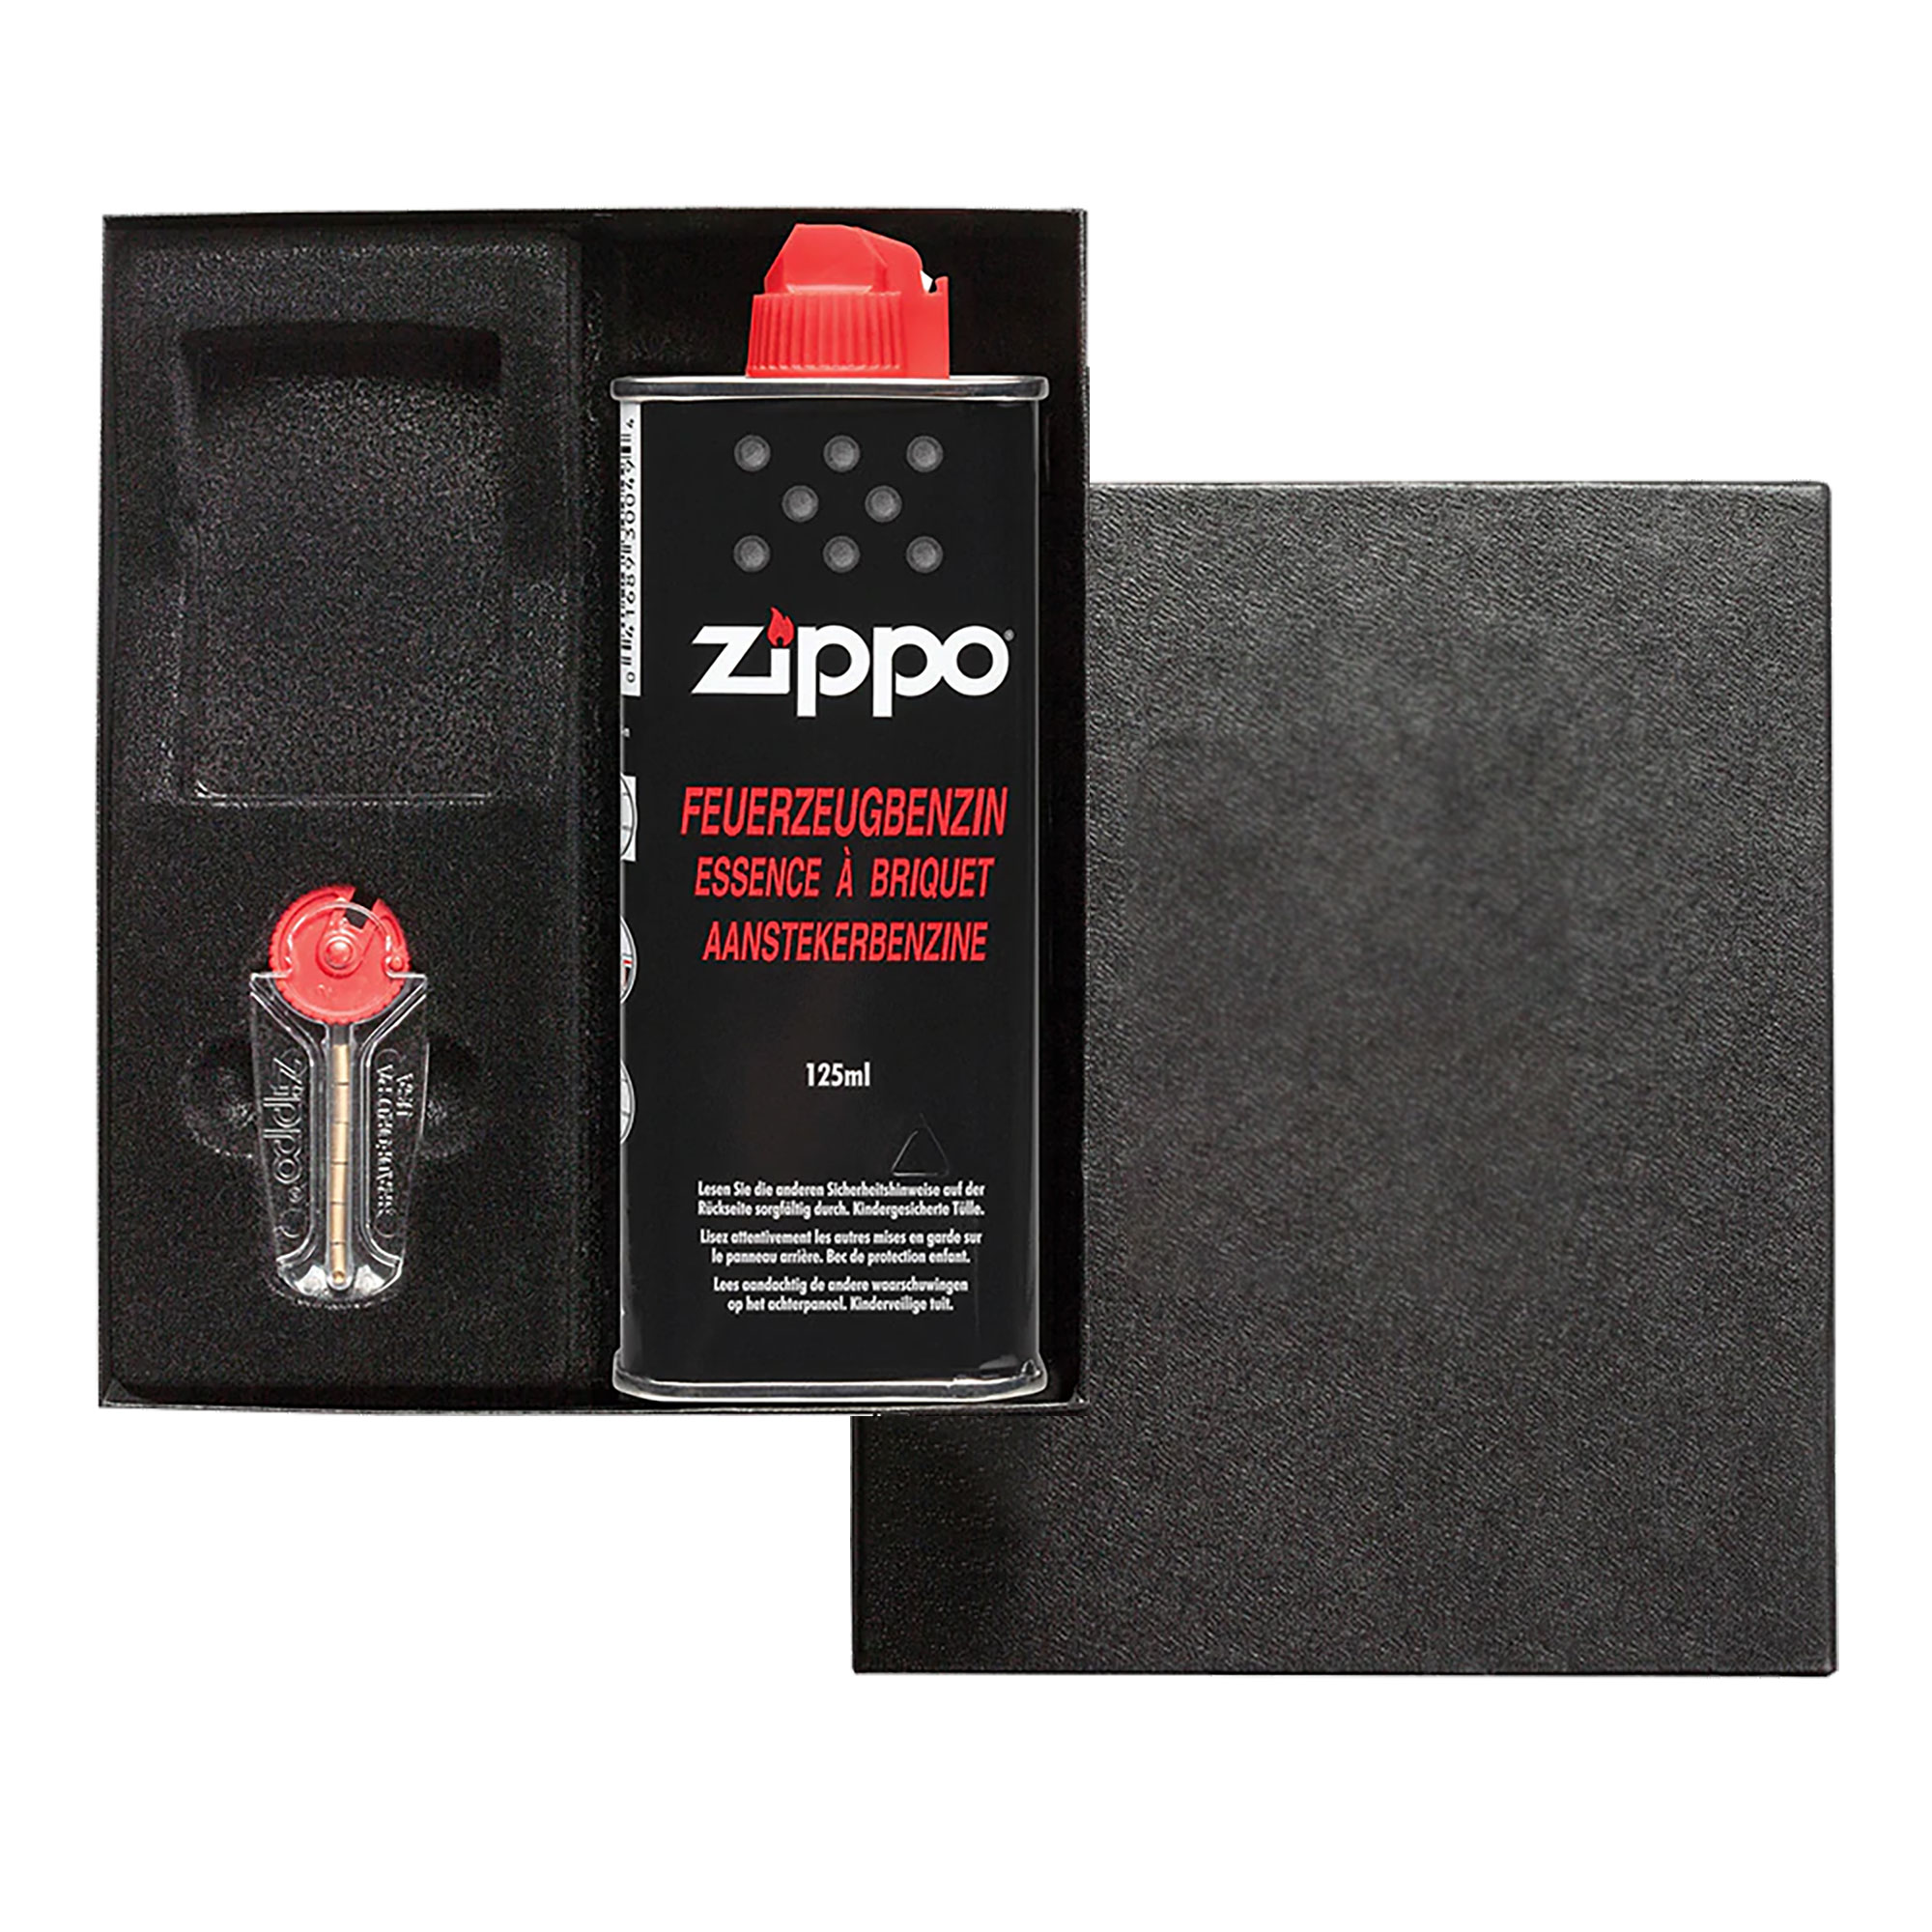 Zippo Box mit einer Flasche Benzin, Feuersteinen und einem Zippo, welcher mit einem Foto und Text graviert ist.